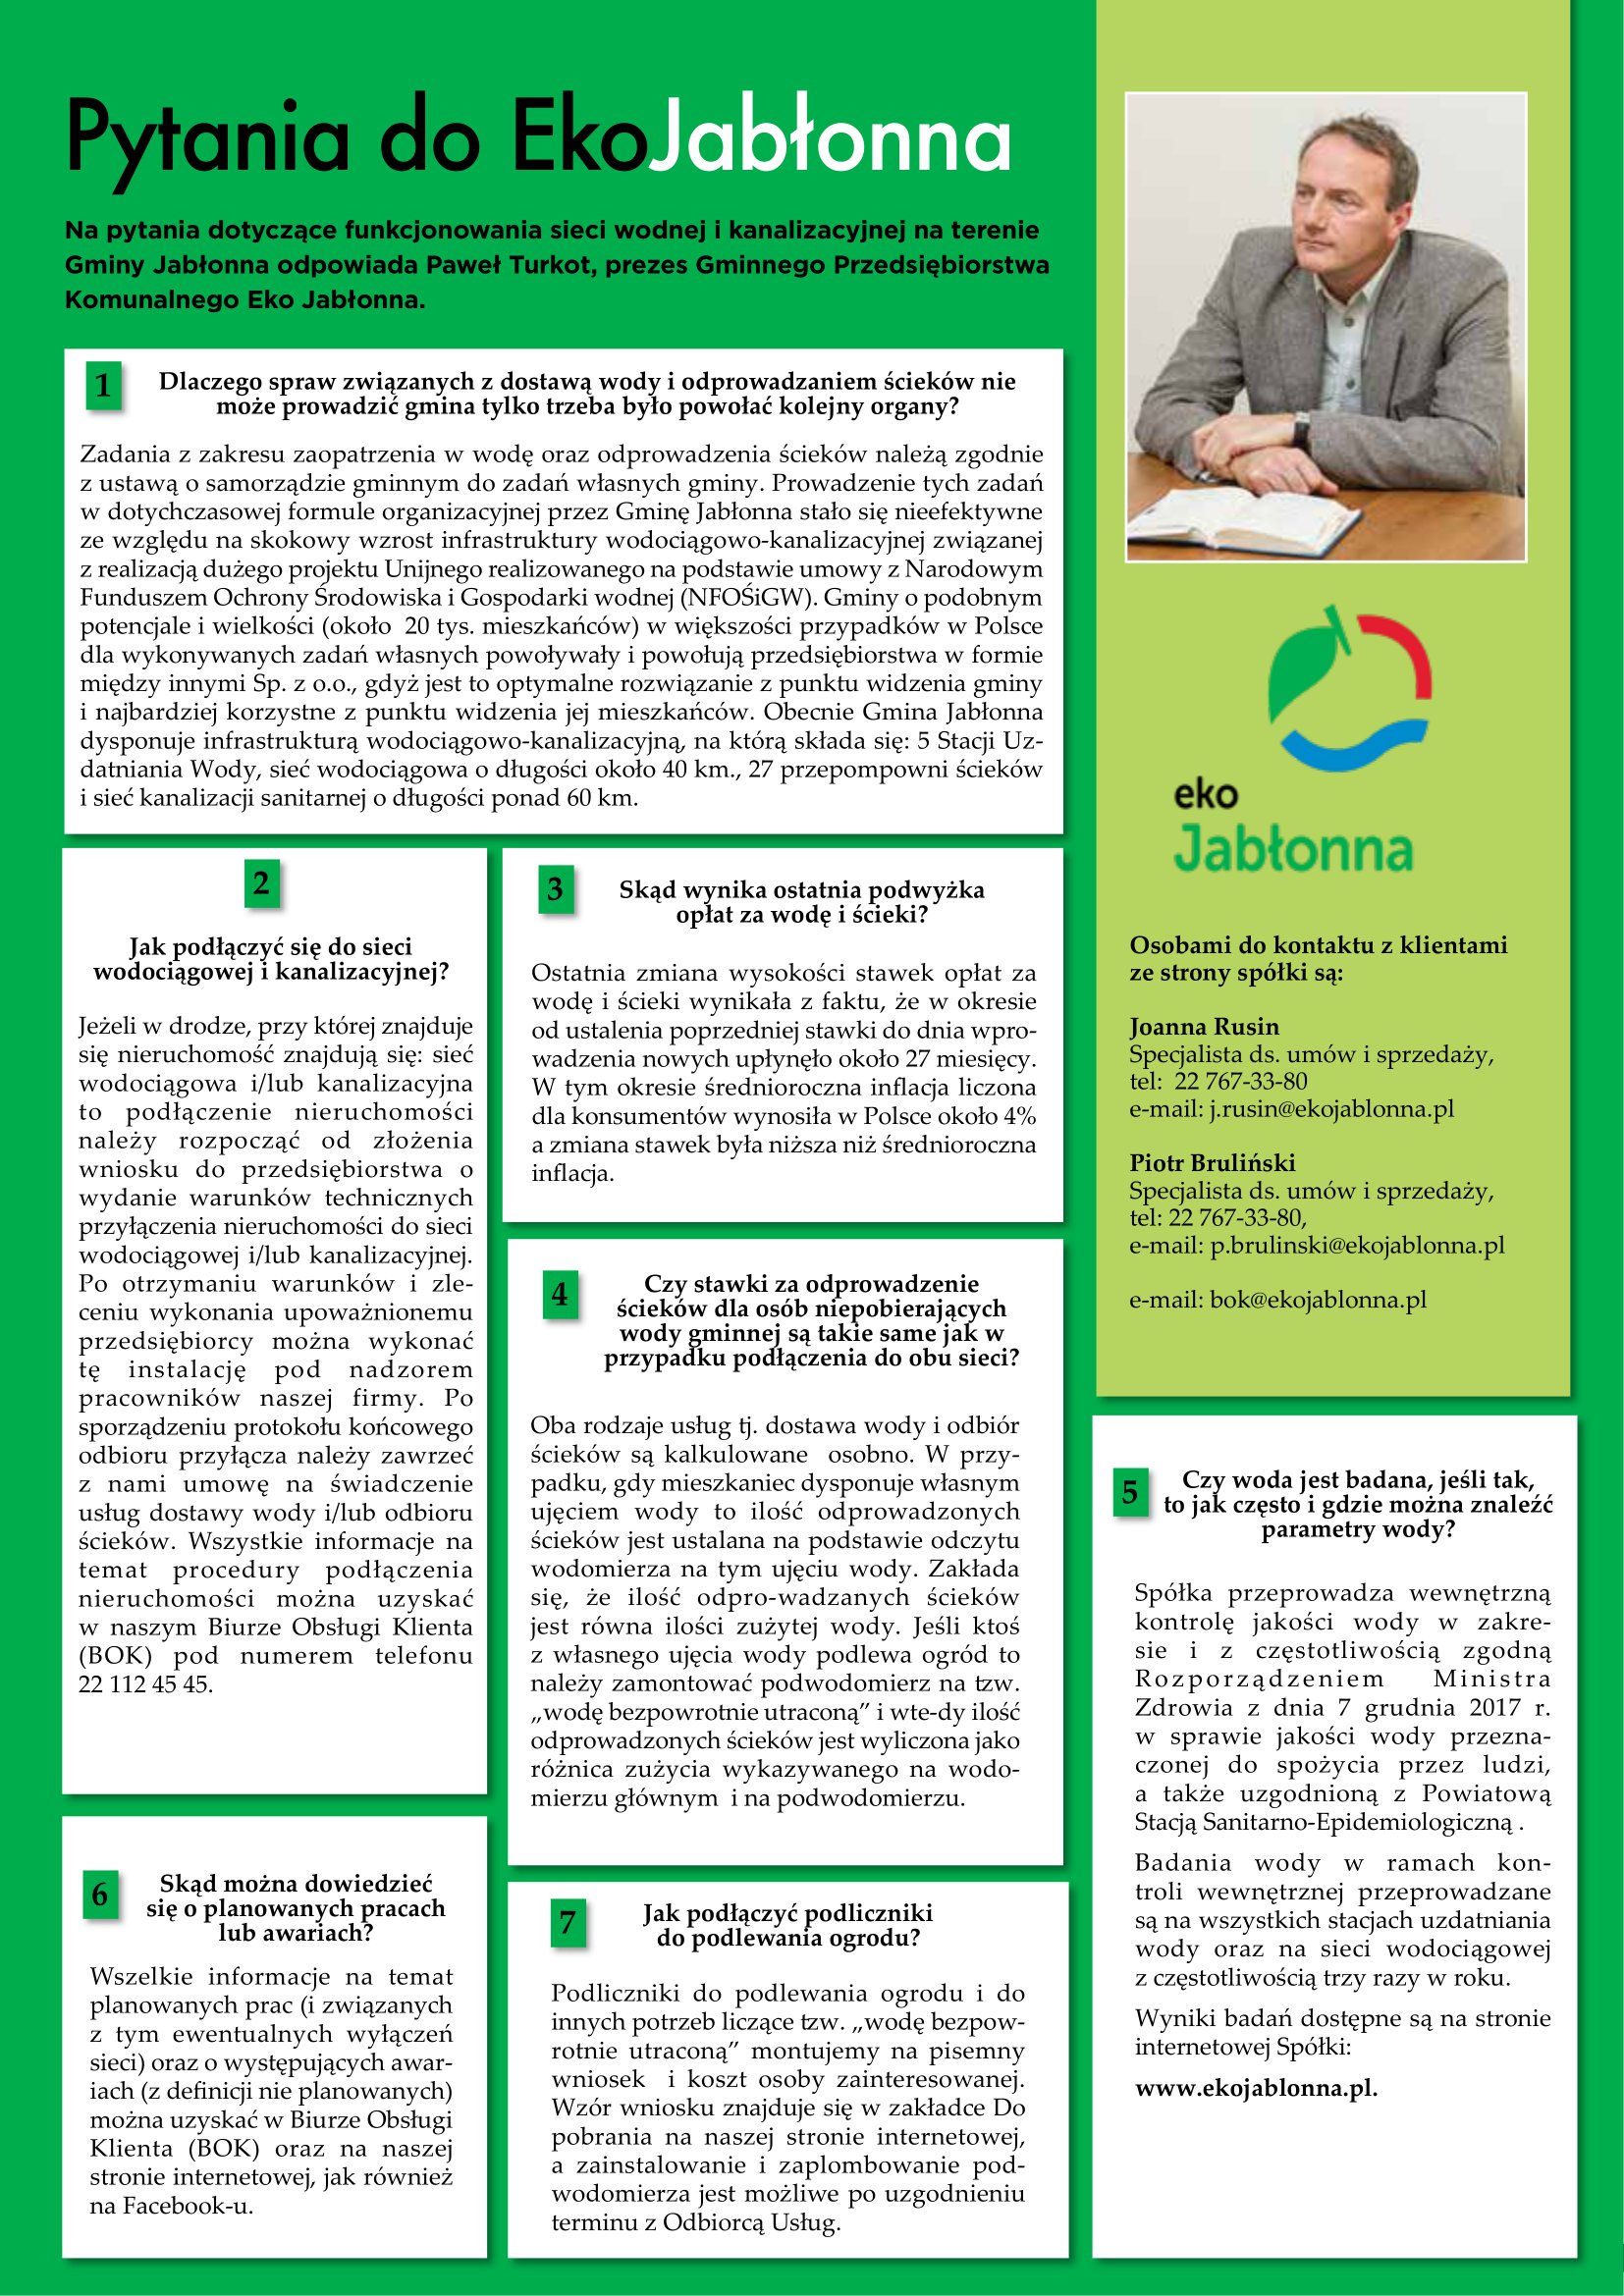 Wieści z Naszej Gminy nr 3 (73) str. 3 – Pytania do Eko Jabłonna - czerwiec/lipiec 2021 r.